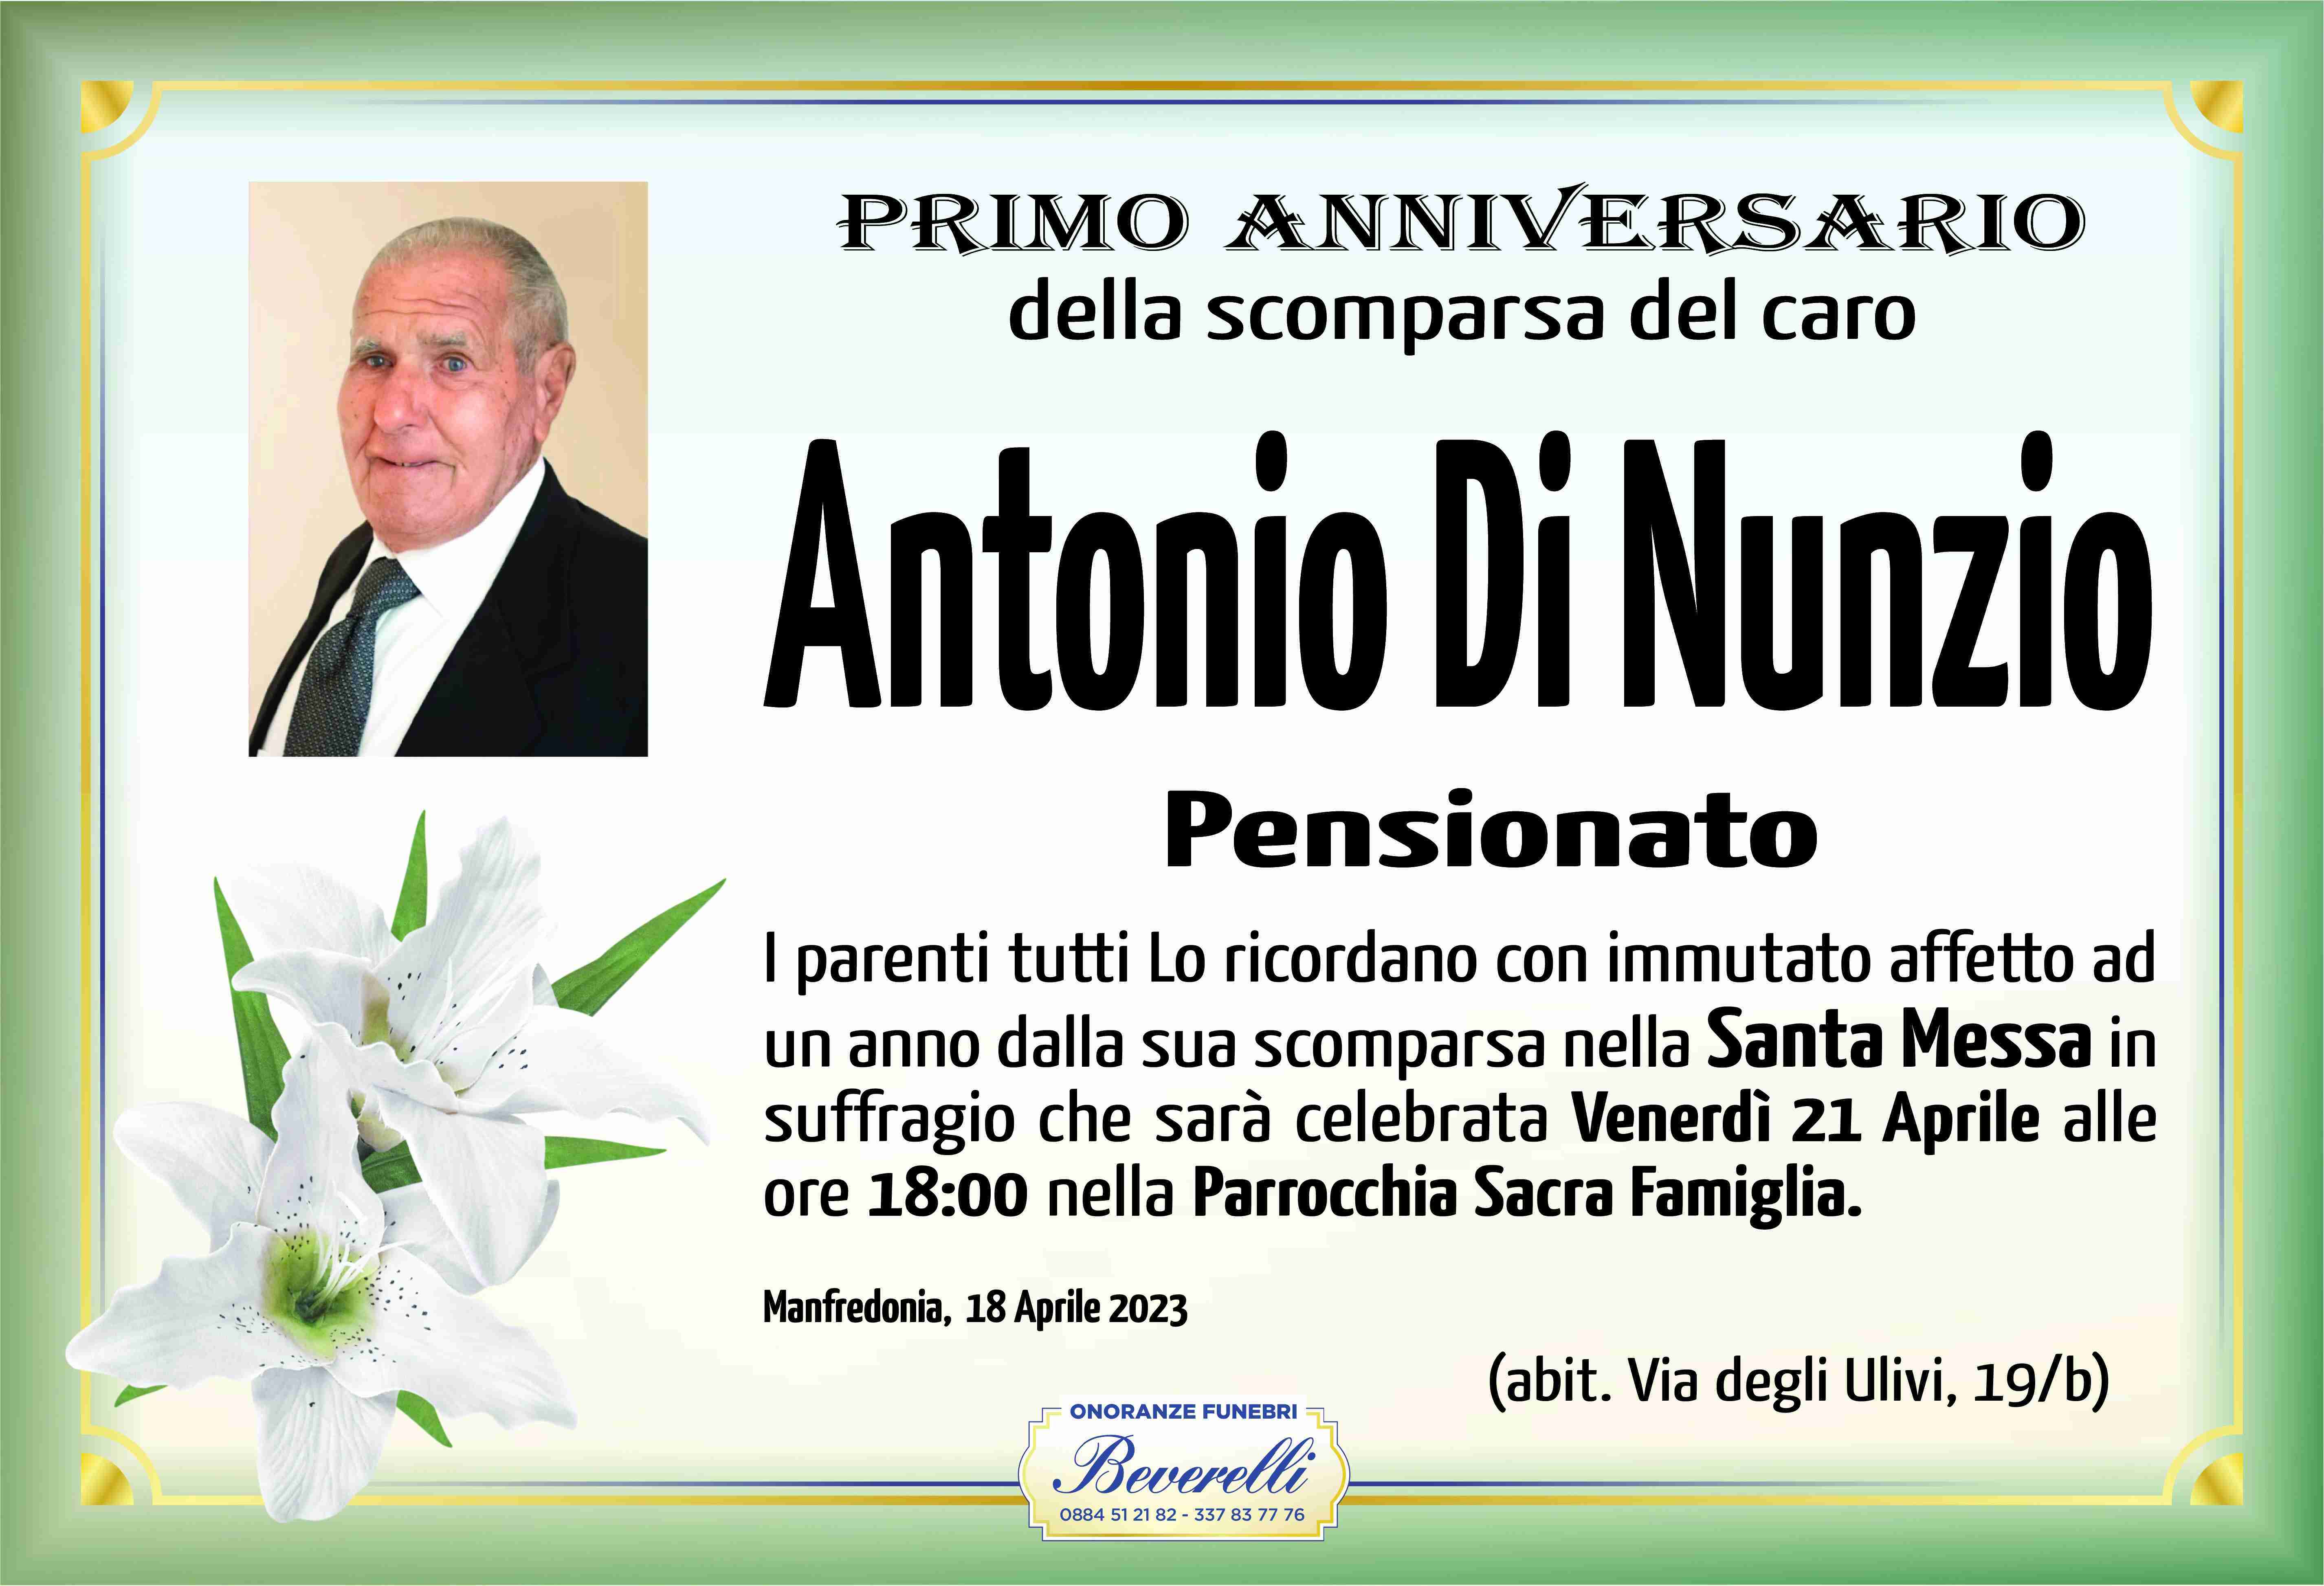 Antonio Di Nunzio